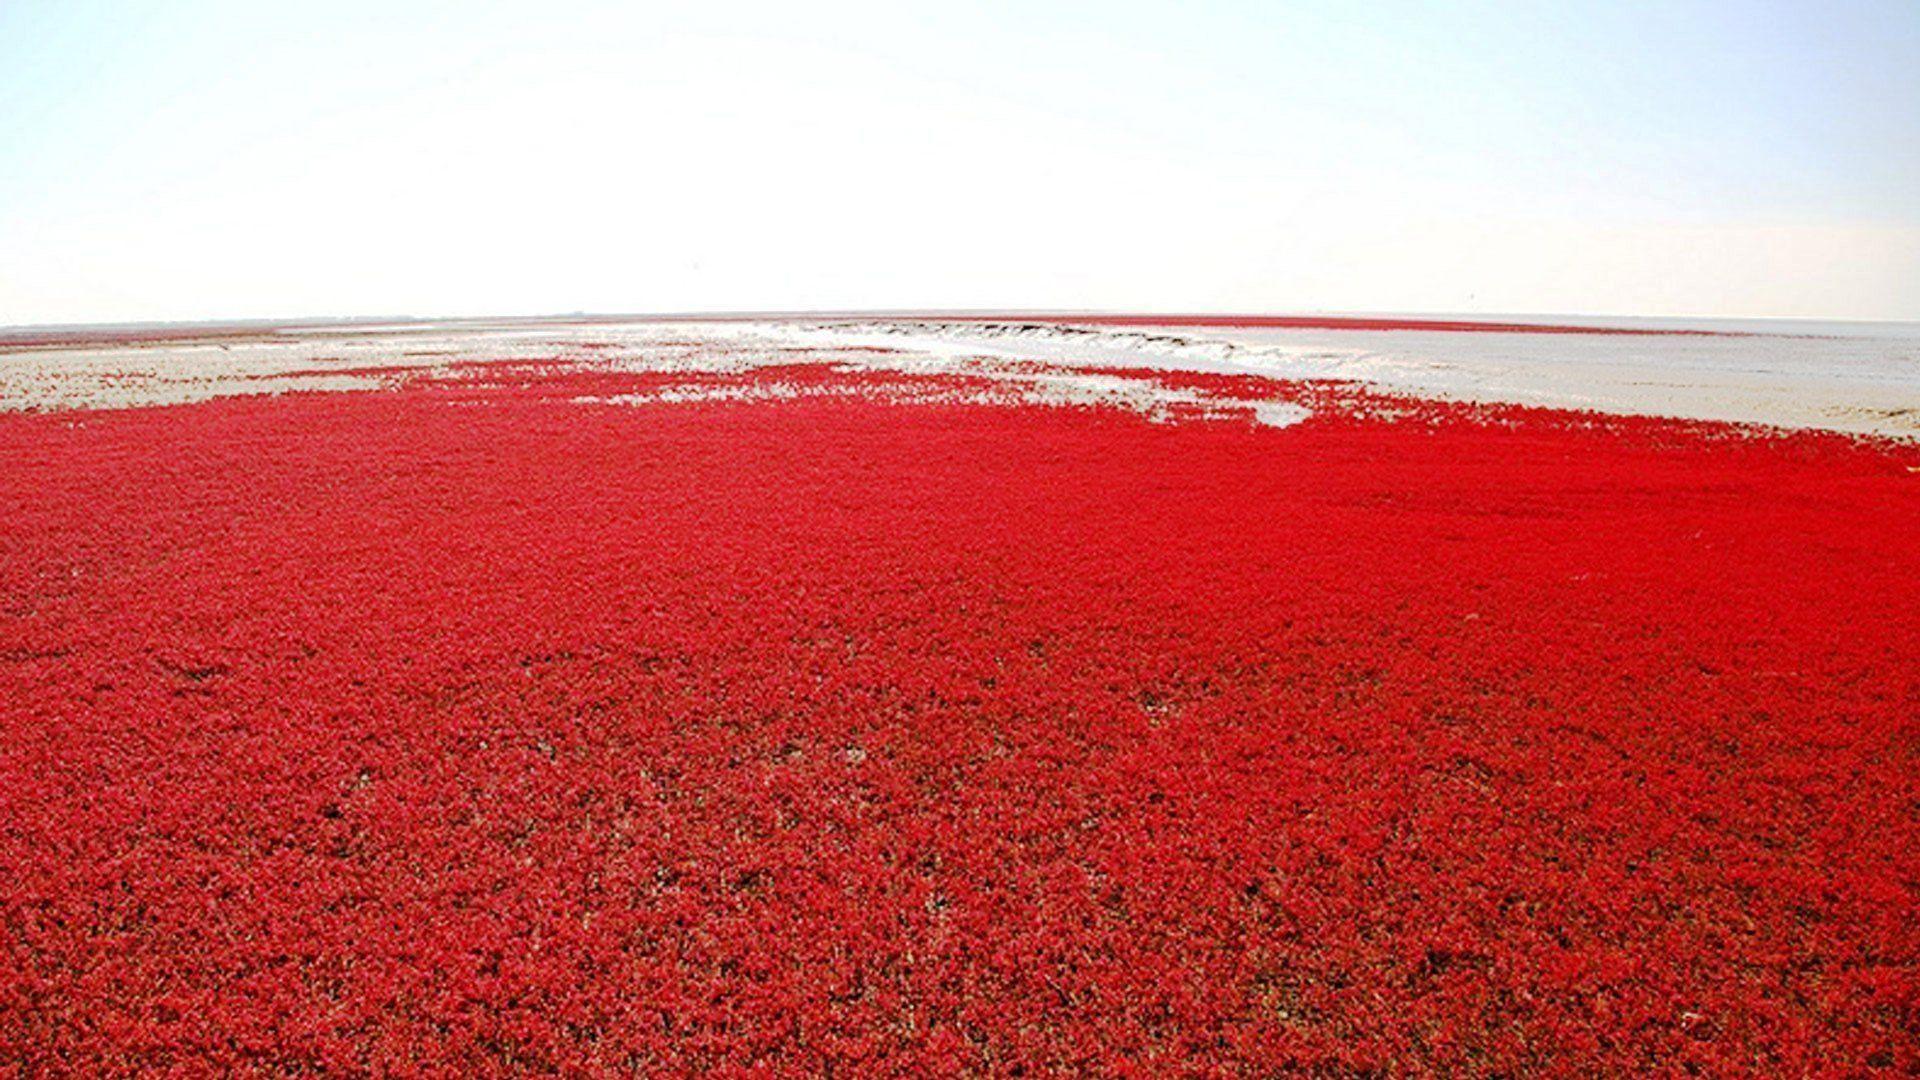 Красный необычный. Красный пляж Паньцзинь. Красный пляж Паньцзинь Китай. Красный пляж Паньцзинь зеленый. Красный пляж Паньцзинь Китай фото.